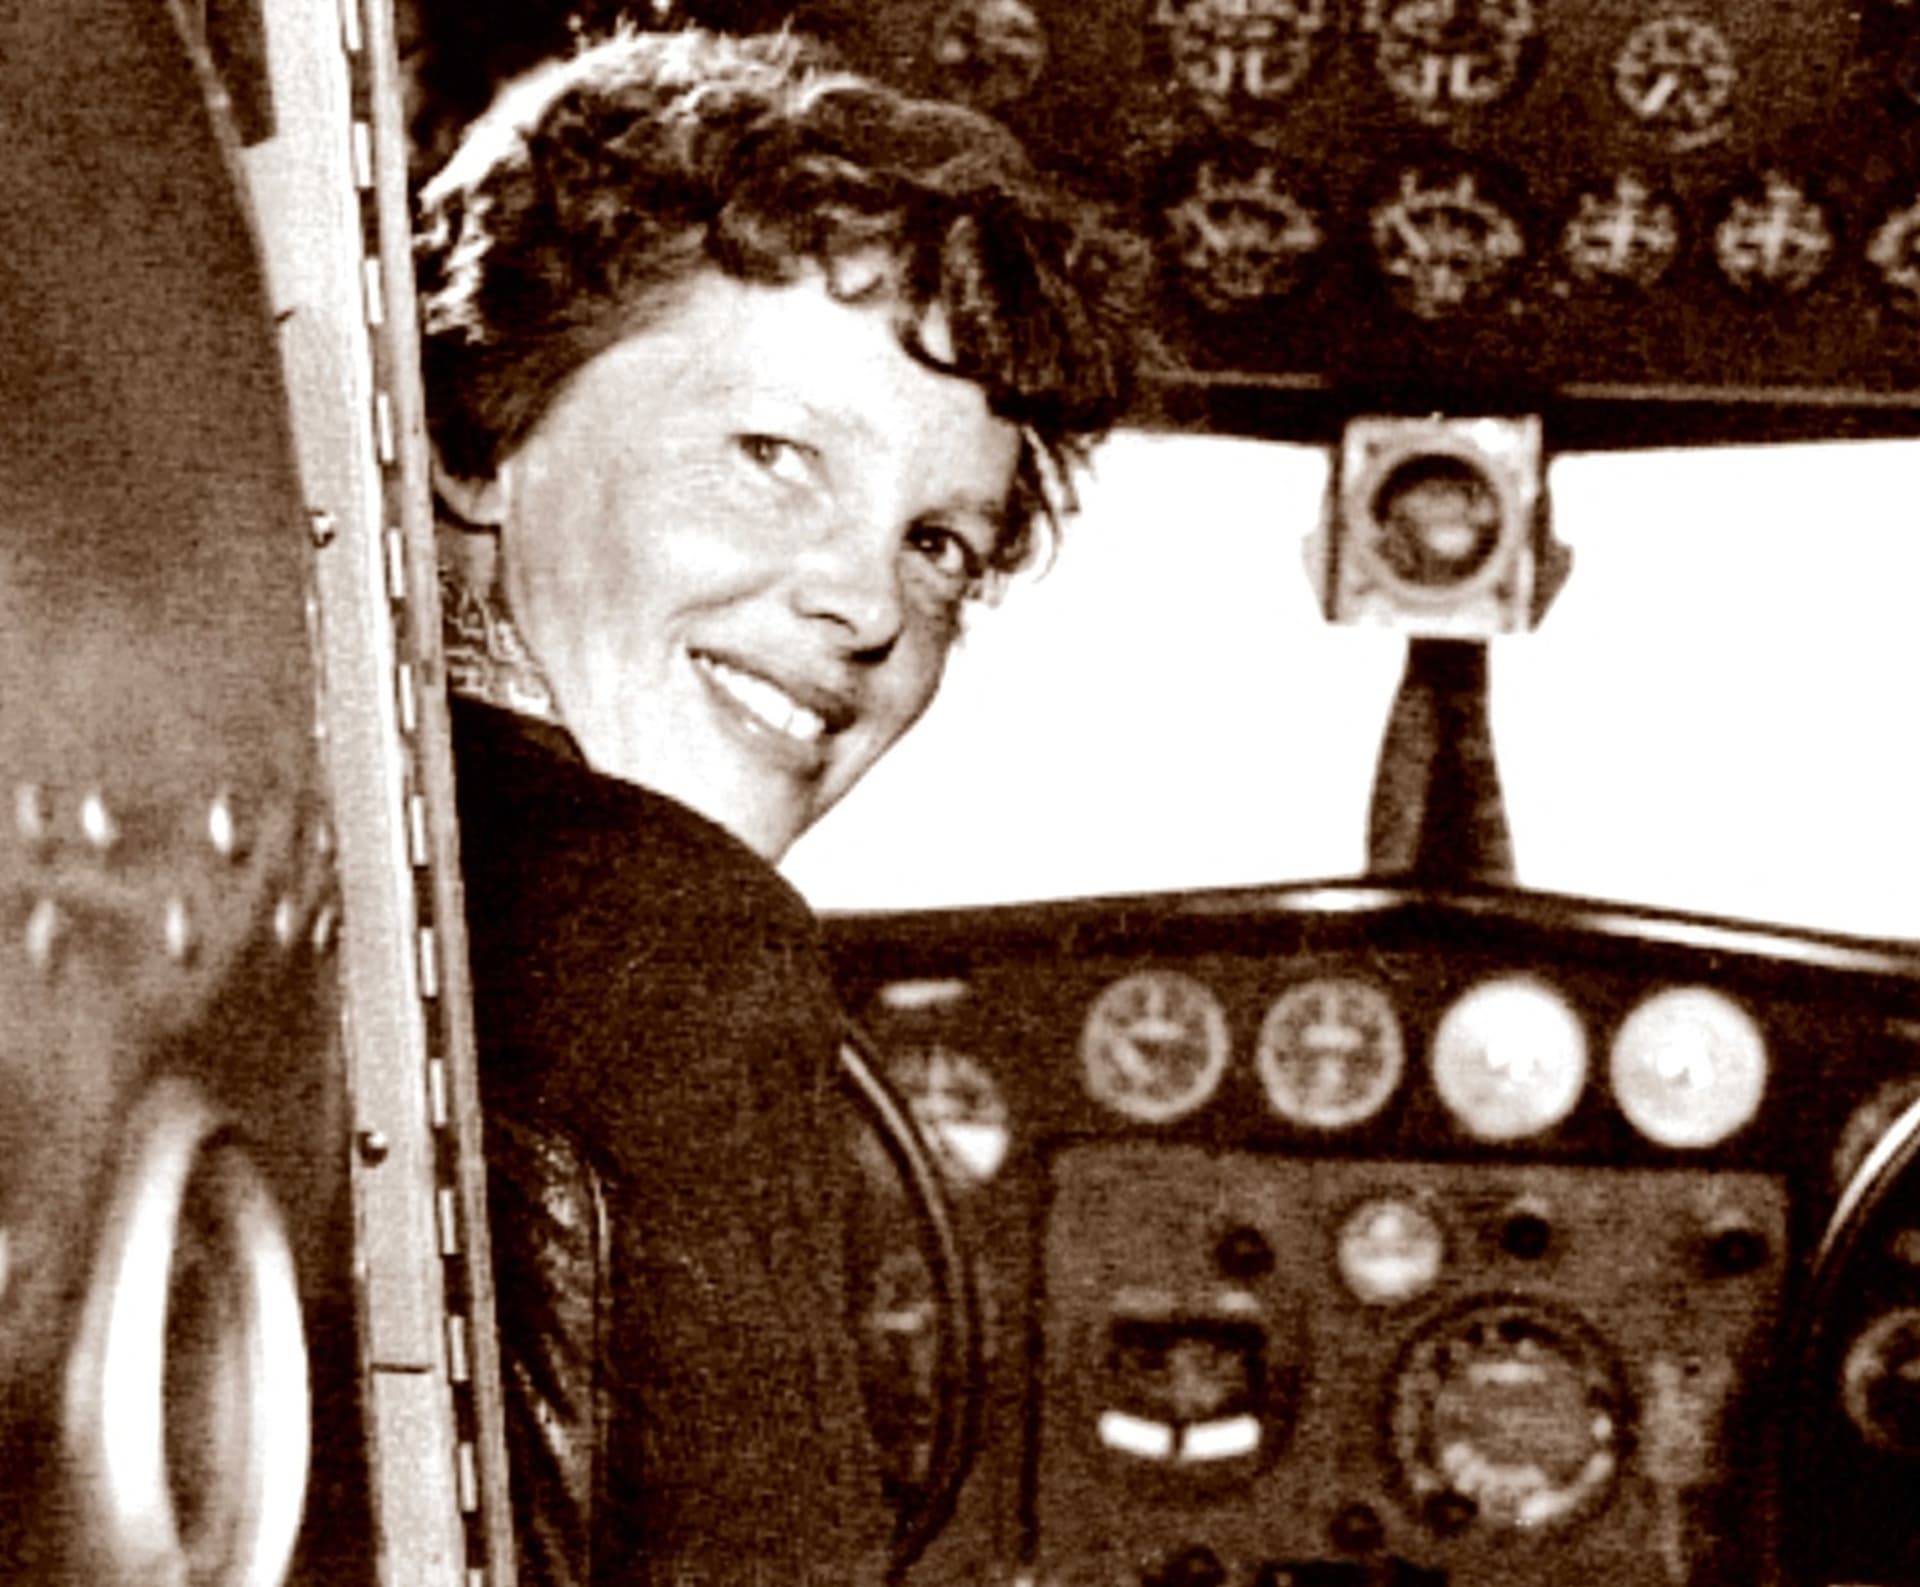 Letectví bylo pro Earhart velkou vášní